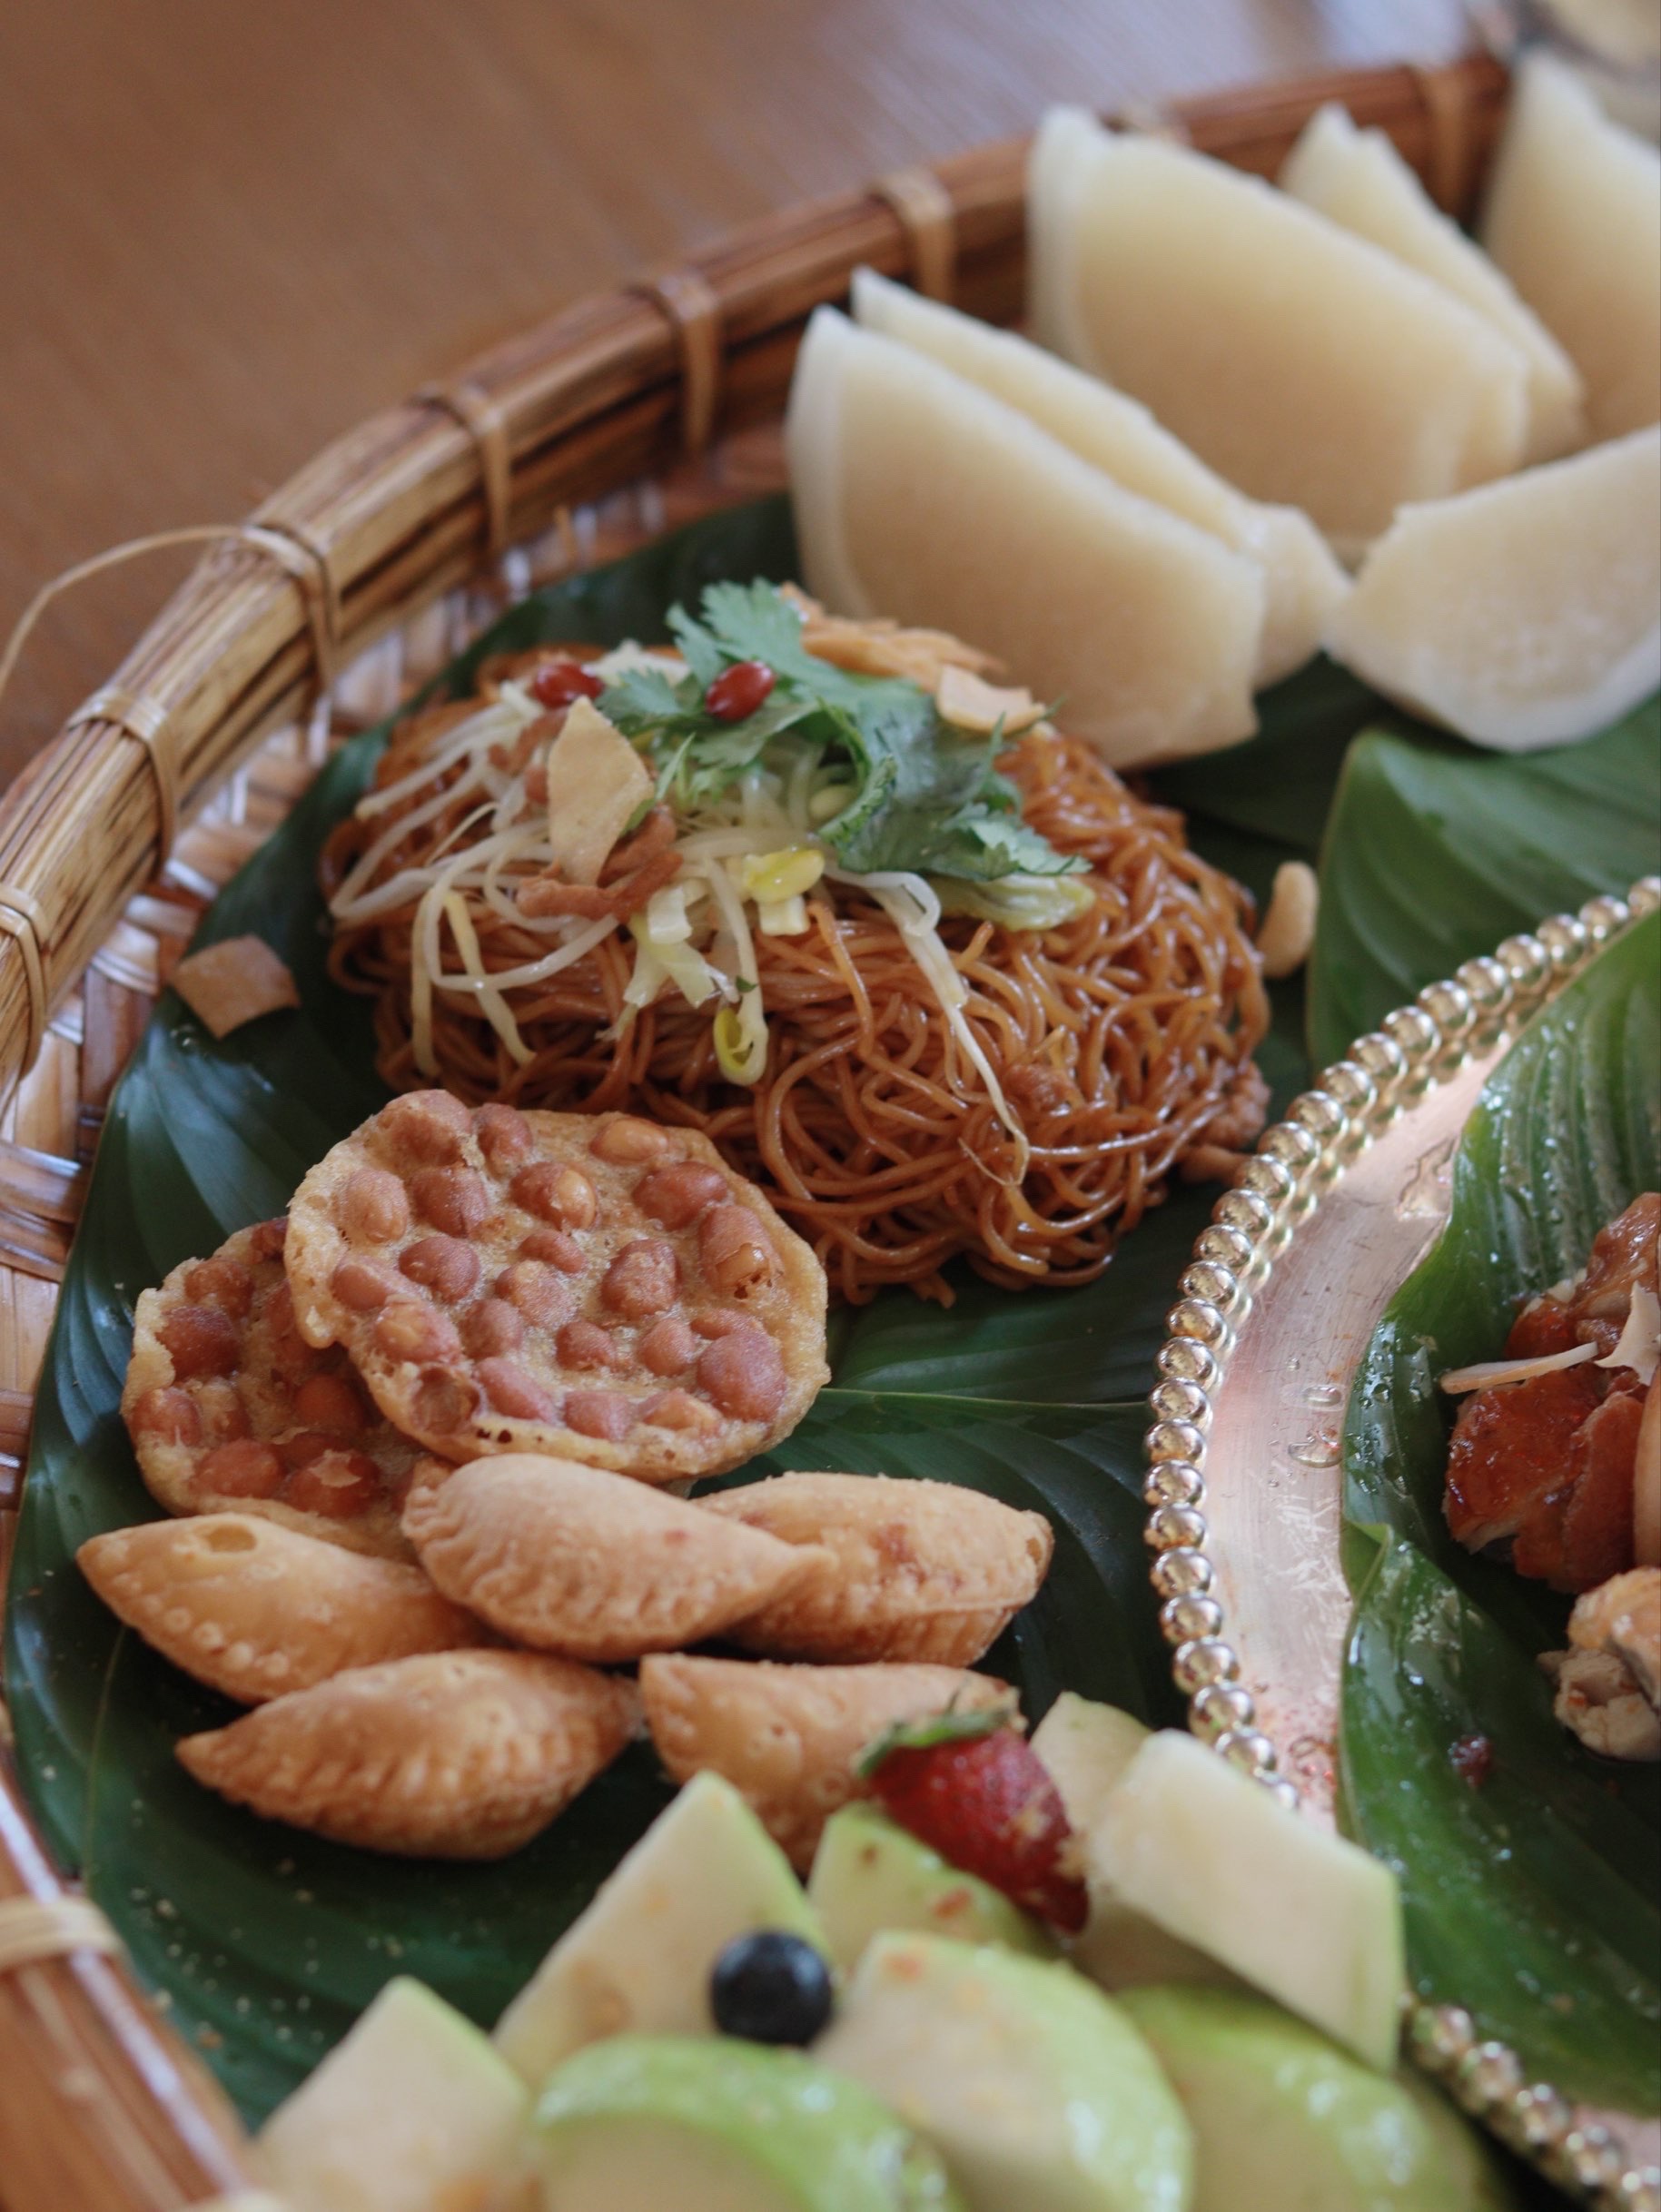 【携程攻略】景点,感受黎族风情更多美食就在黎家宴 感受黎族文化享受